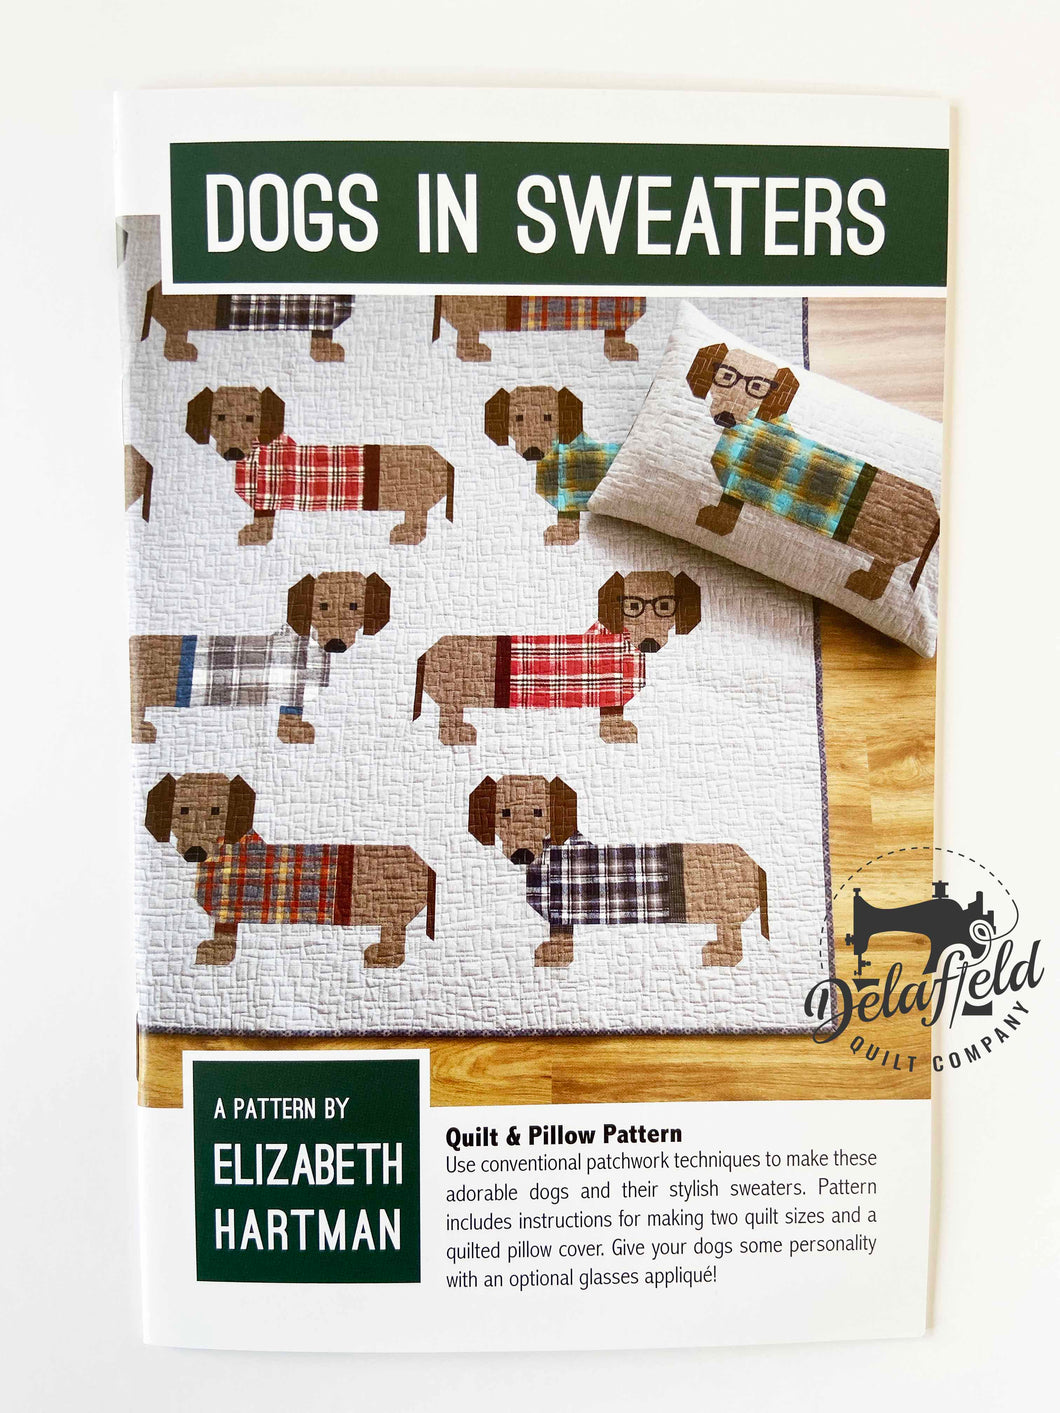 Dogs in Sweaters - by Elizabeth Hartman - Printed Pattern